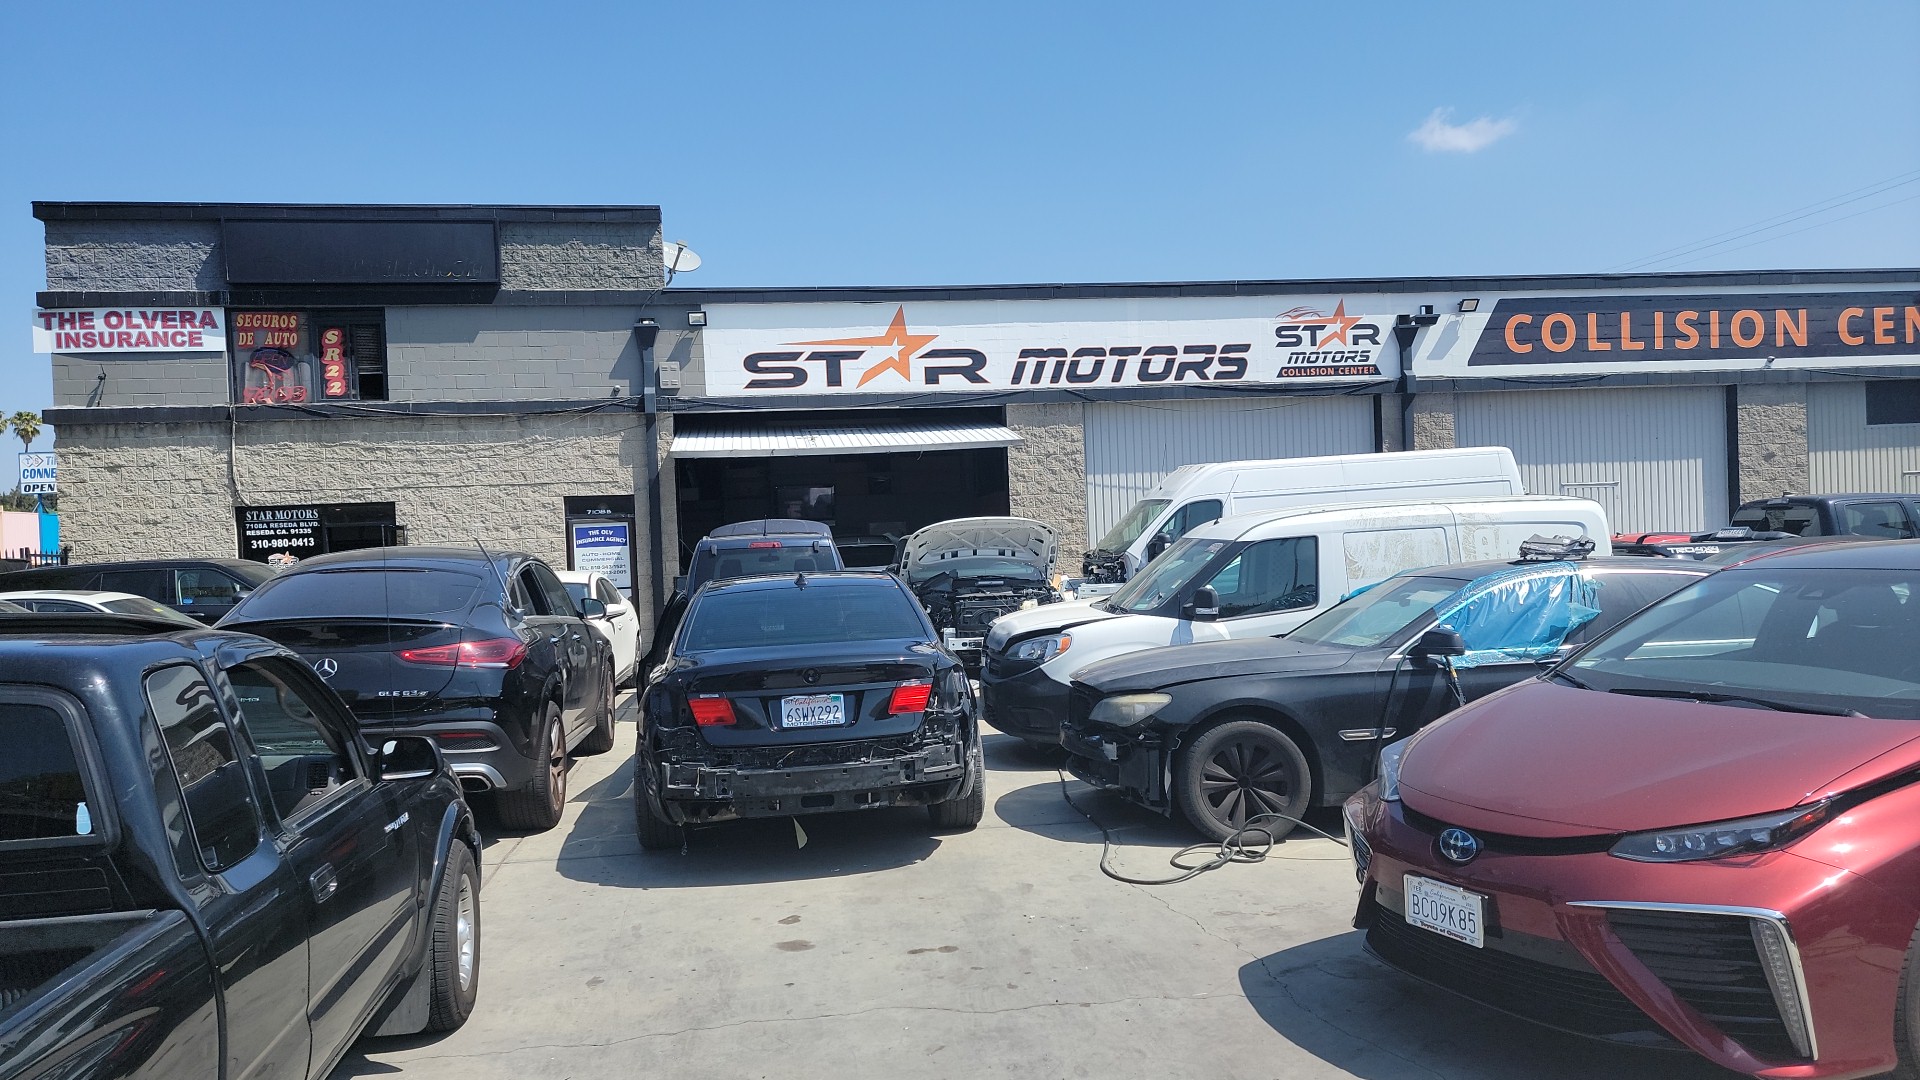 Star Motors